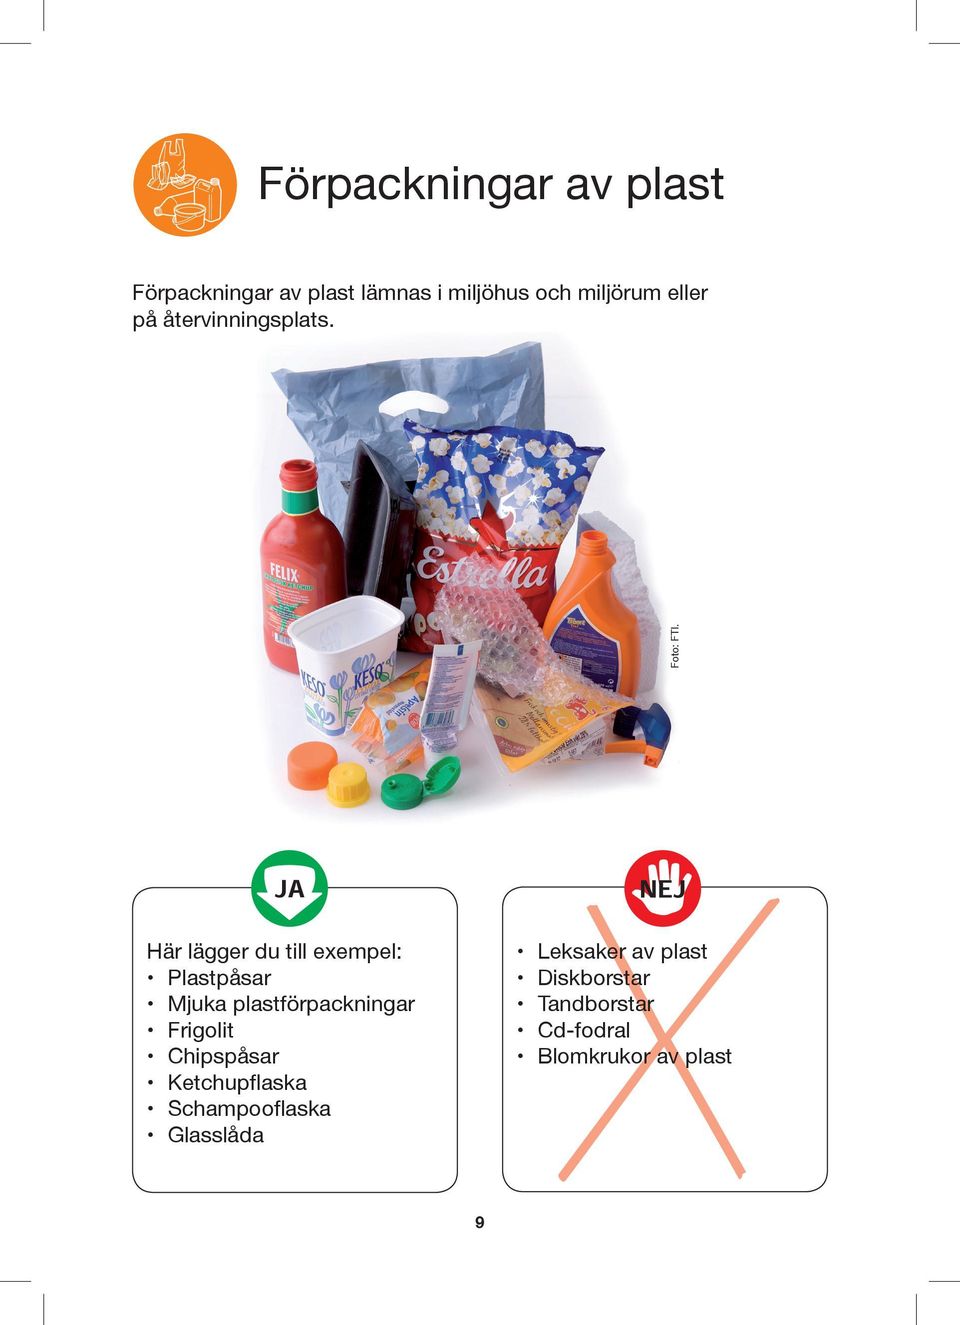 Här lägger du till exempel: Plastpåsar Mjuka plastförpackningar Frigolit